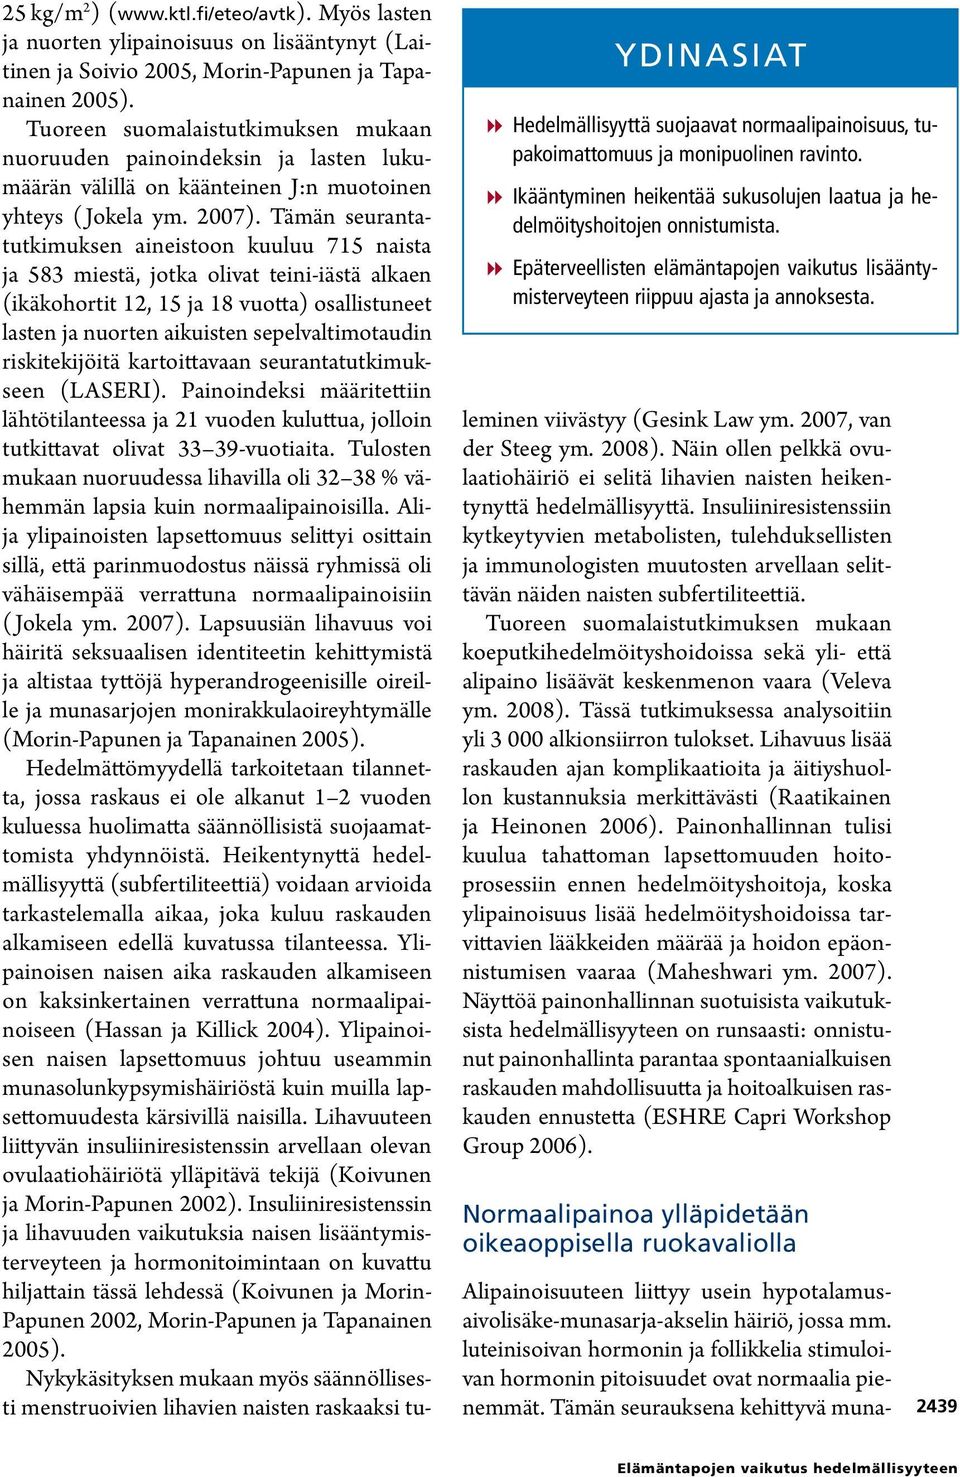 Myös lasten ja nuorten ylipainoisuus on lisääntynyt (Laitinen ja Soivio 2005, Morin-Papunen ja Tapanainen 2005).